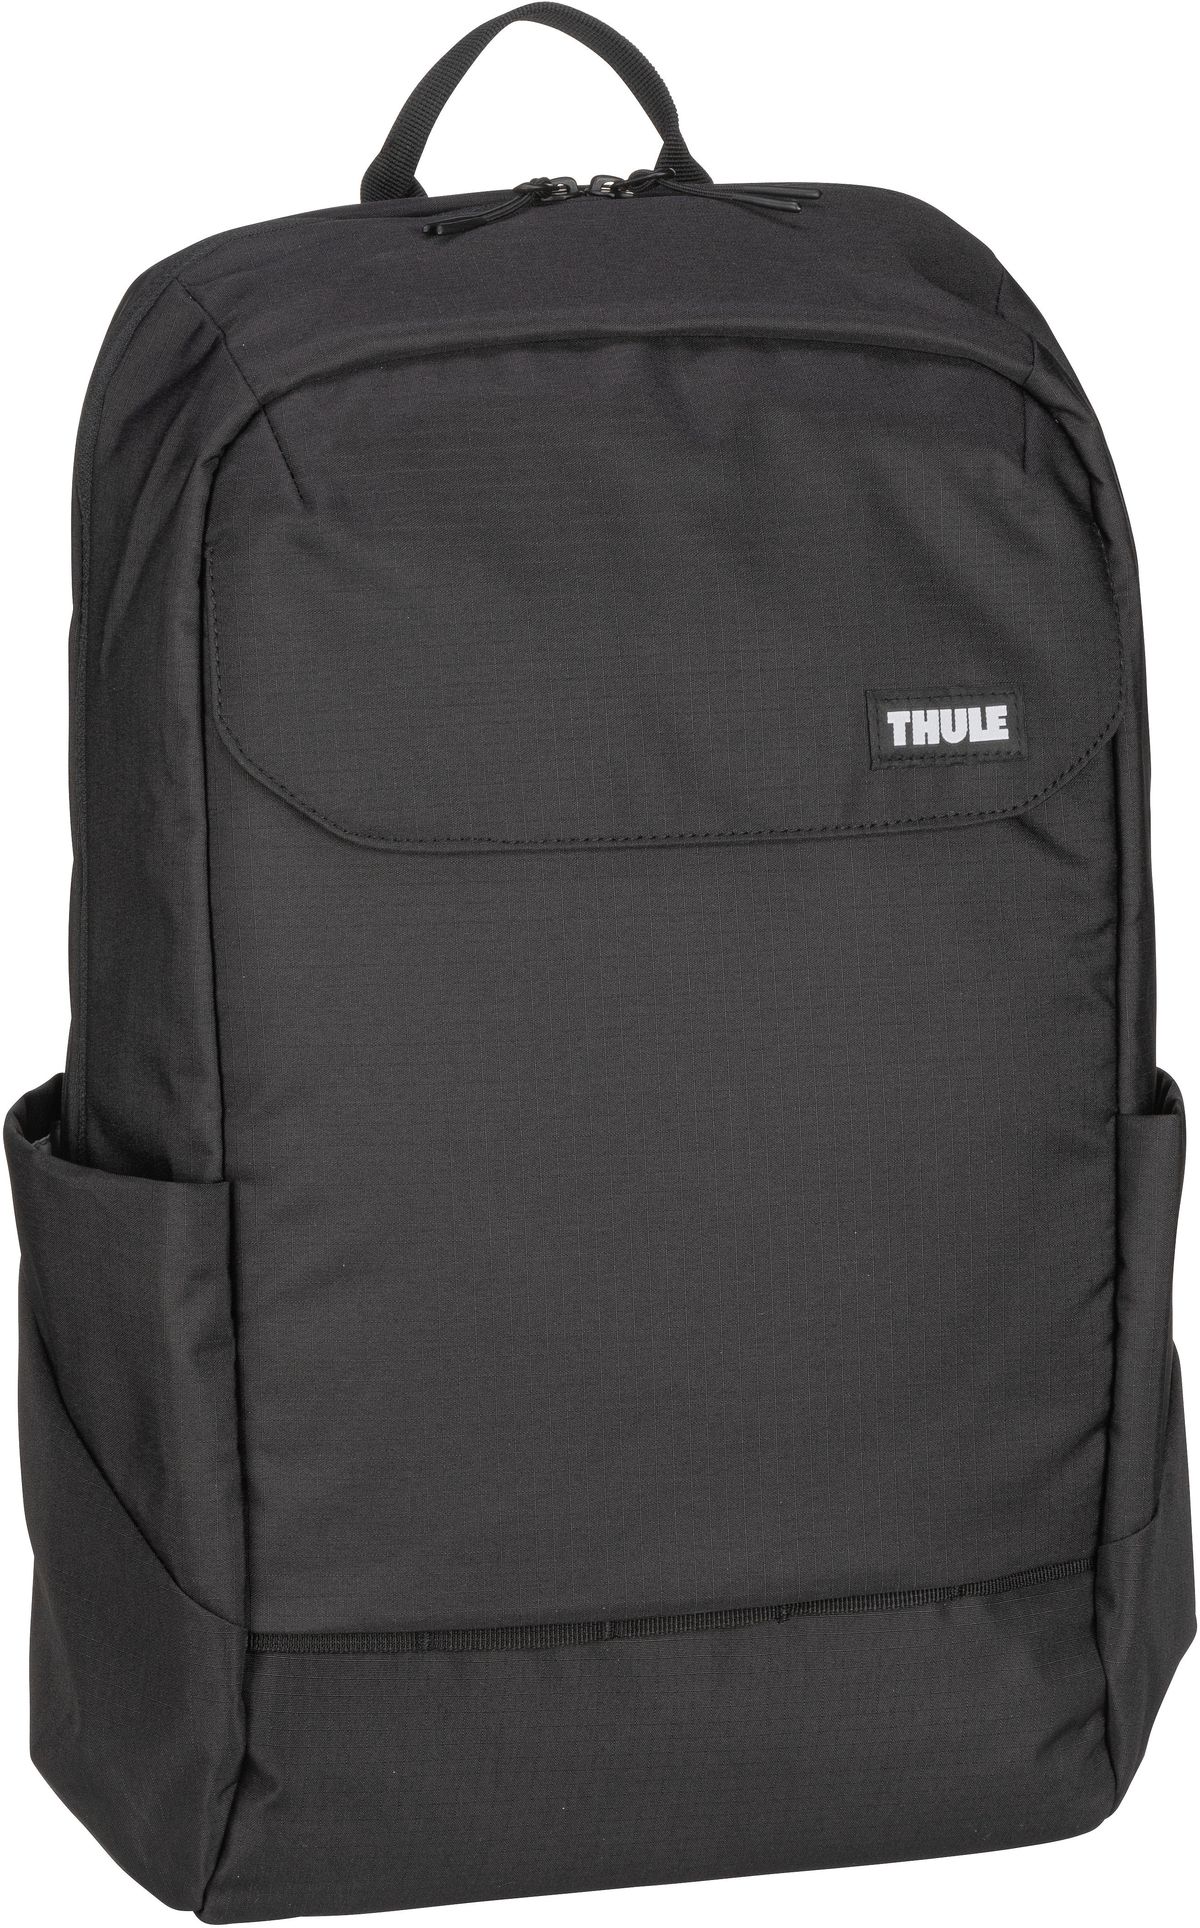 Thule Thule Lithos Backpack 20L in Schwarz (20 Liter), Rucksack / Backpack